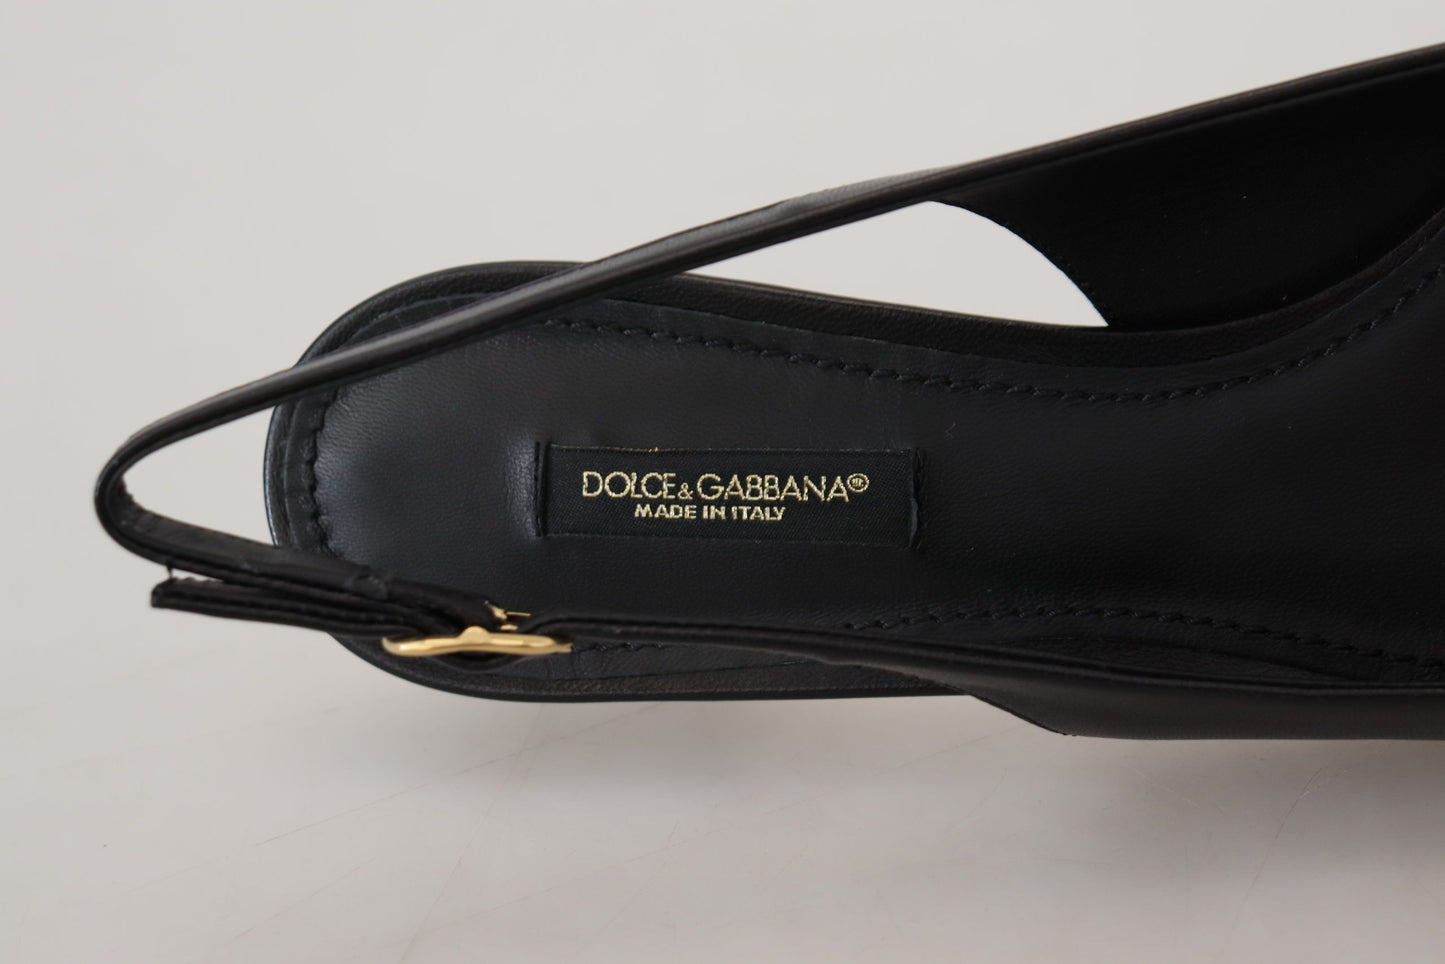 Dolce & Gabbana Elegant Black Leather Slingback Pumps